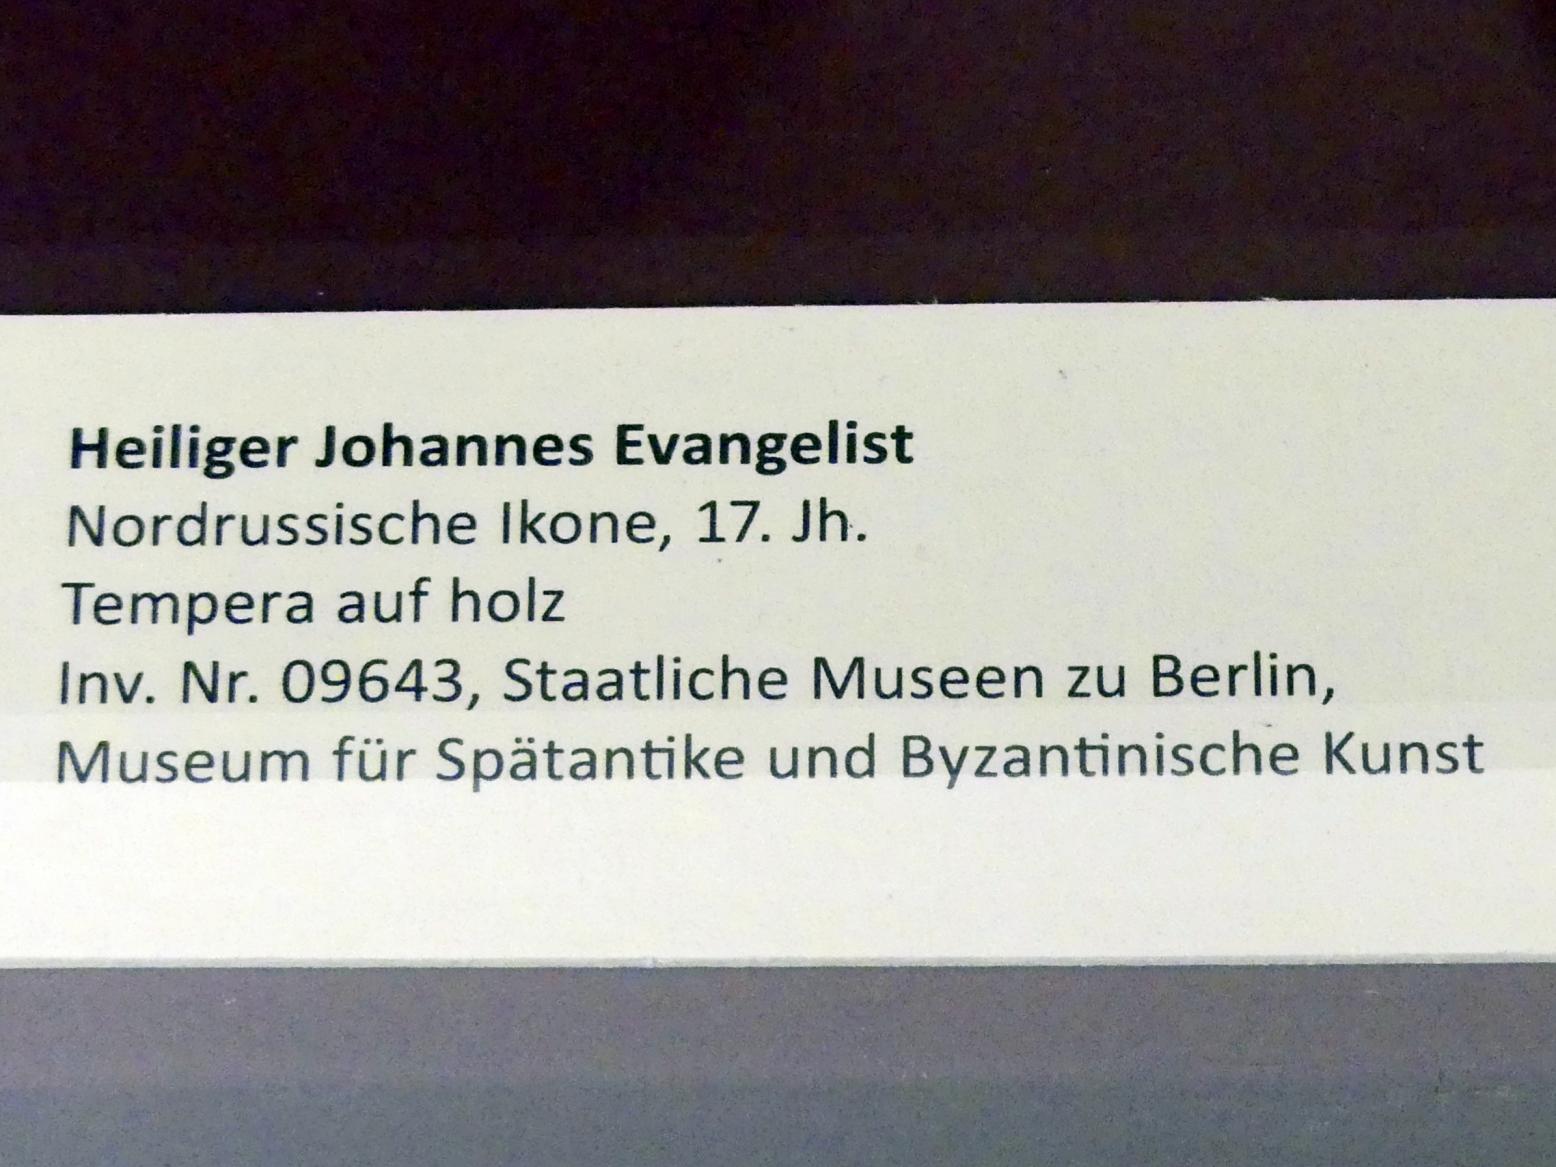 Heiliger Johannes Evangelist, Frankfurt am Main, Ikonen-Museum, Obergeschoss, 17. Jhd., Bild 2/2